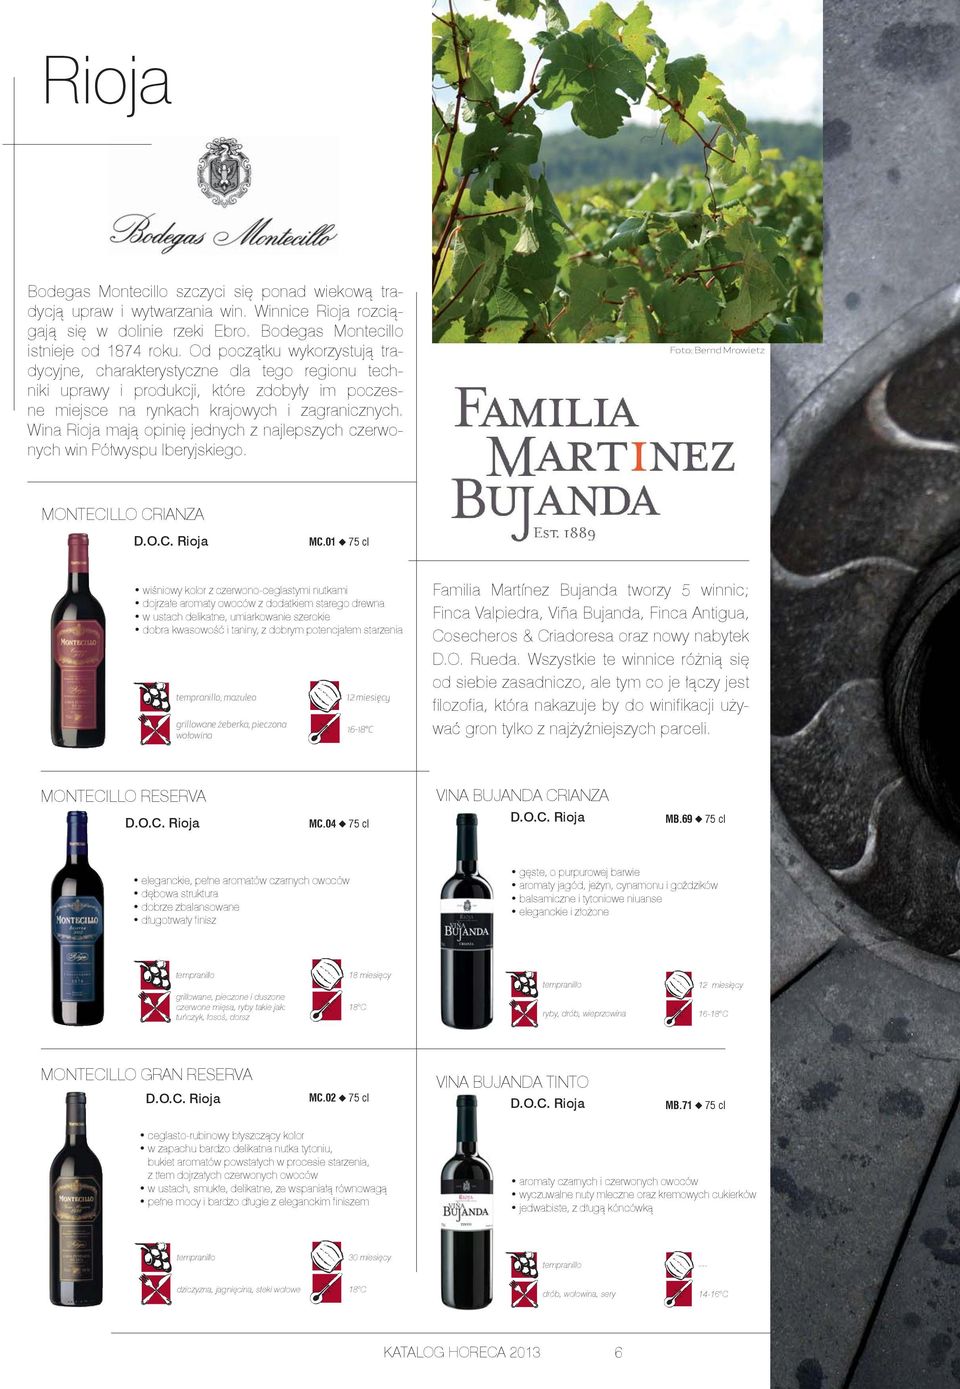 Wina Rioja mają opinię jednych z najlepszych czerwonych win Półwyspu Iberyjskiego. Foto: Bernd Mrowietz MONTECILLO CRIANZA MC.